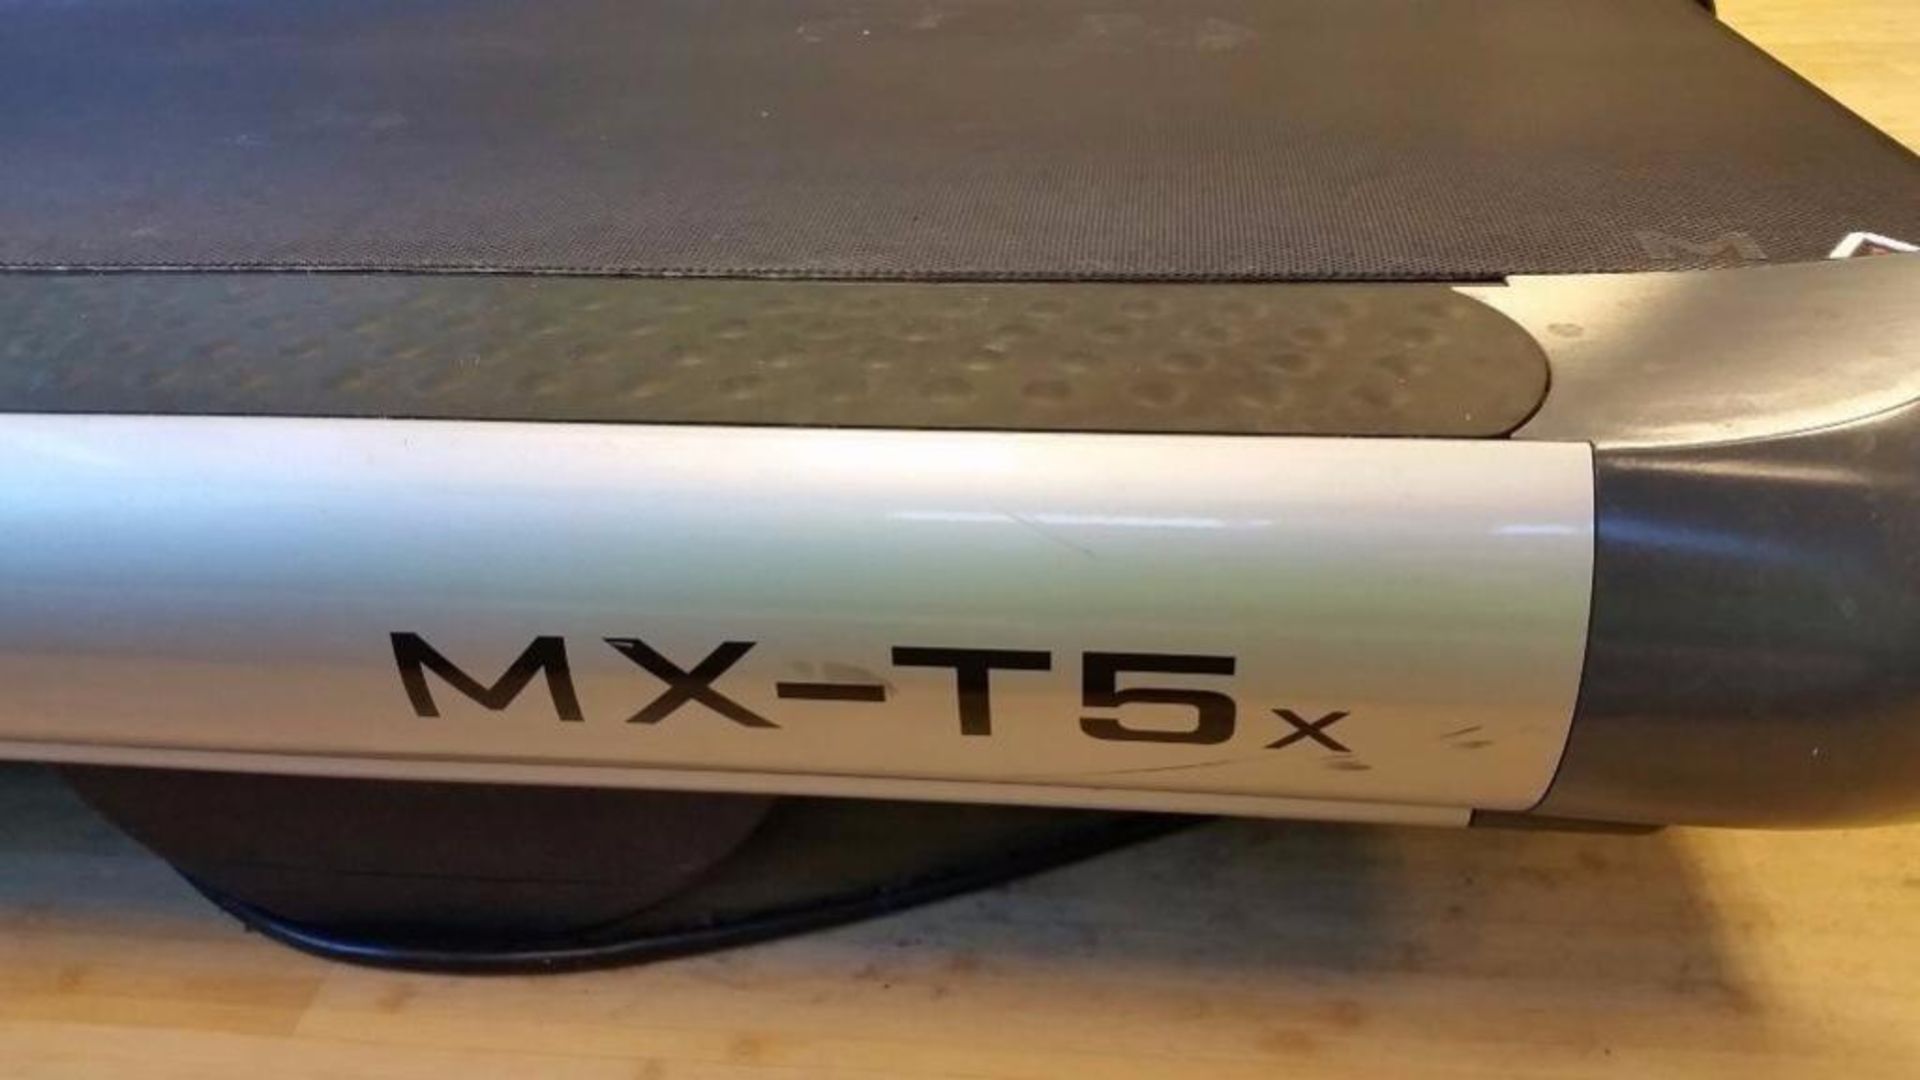 Matrix MX-TX5 Treadmill (this lot is located at 737 N 5th Street, Richmond, VA) - Image 3 of 3